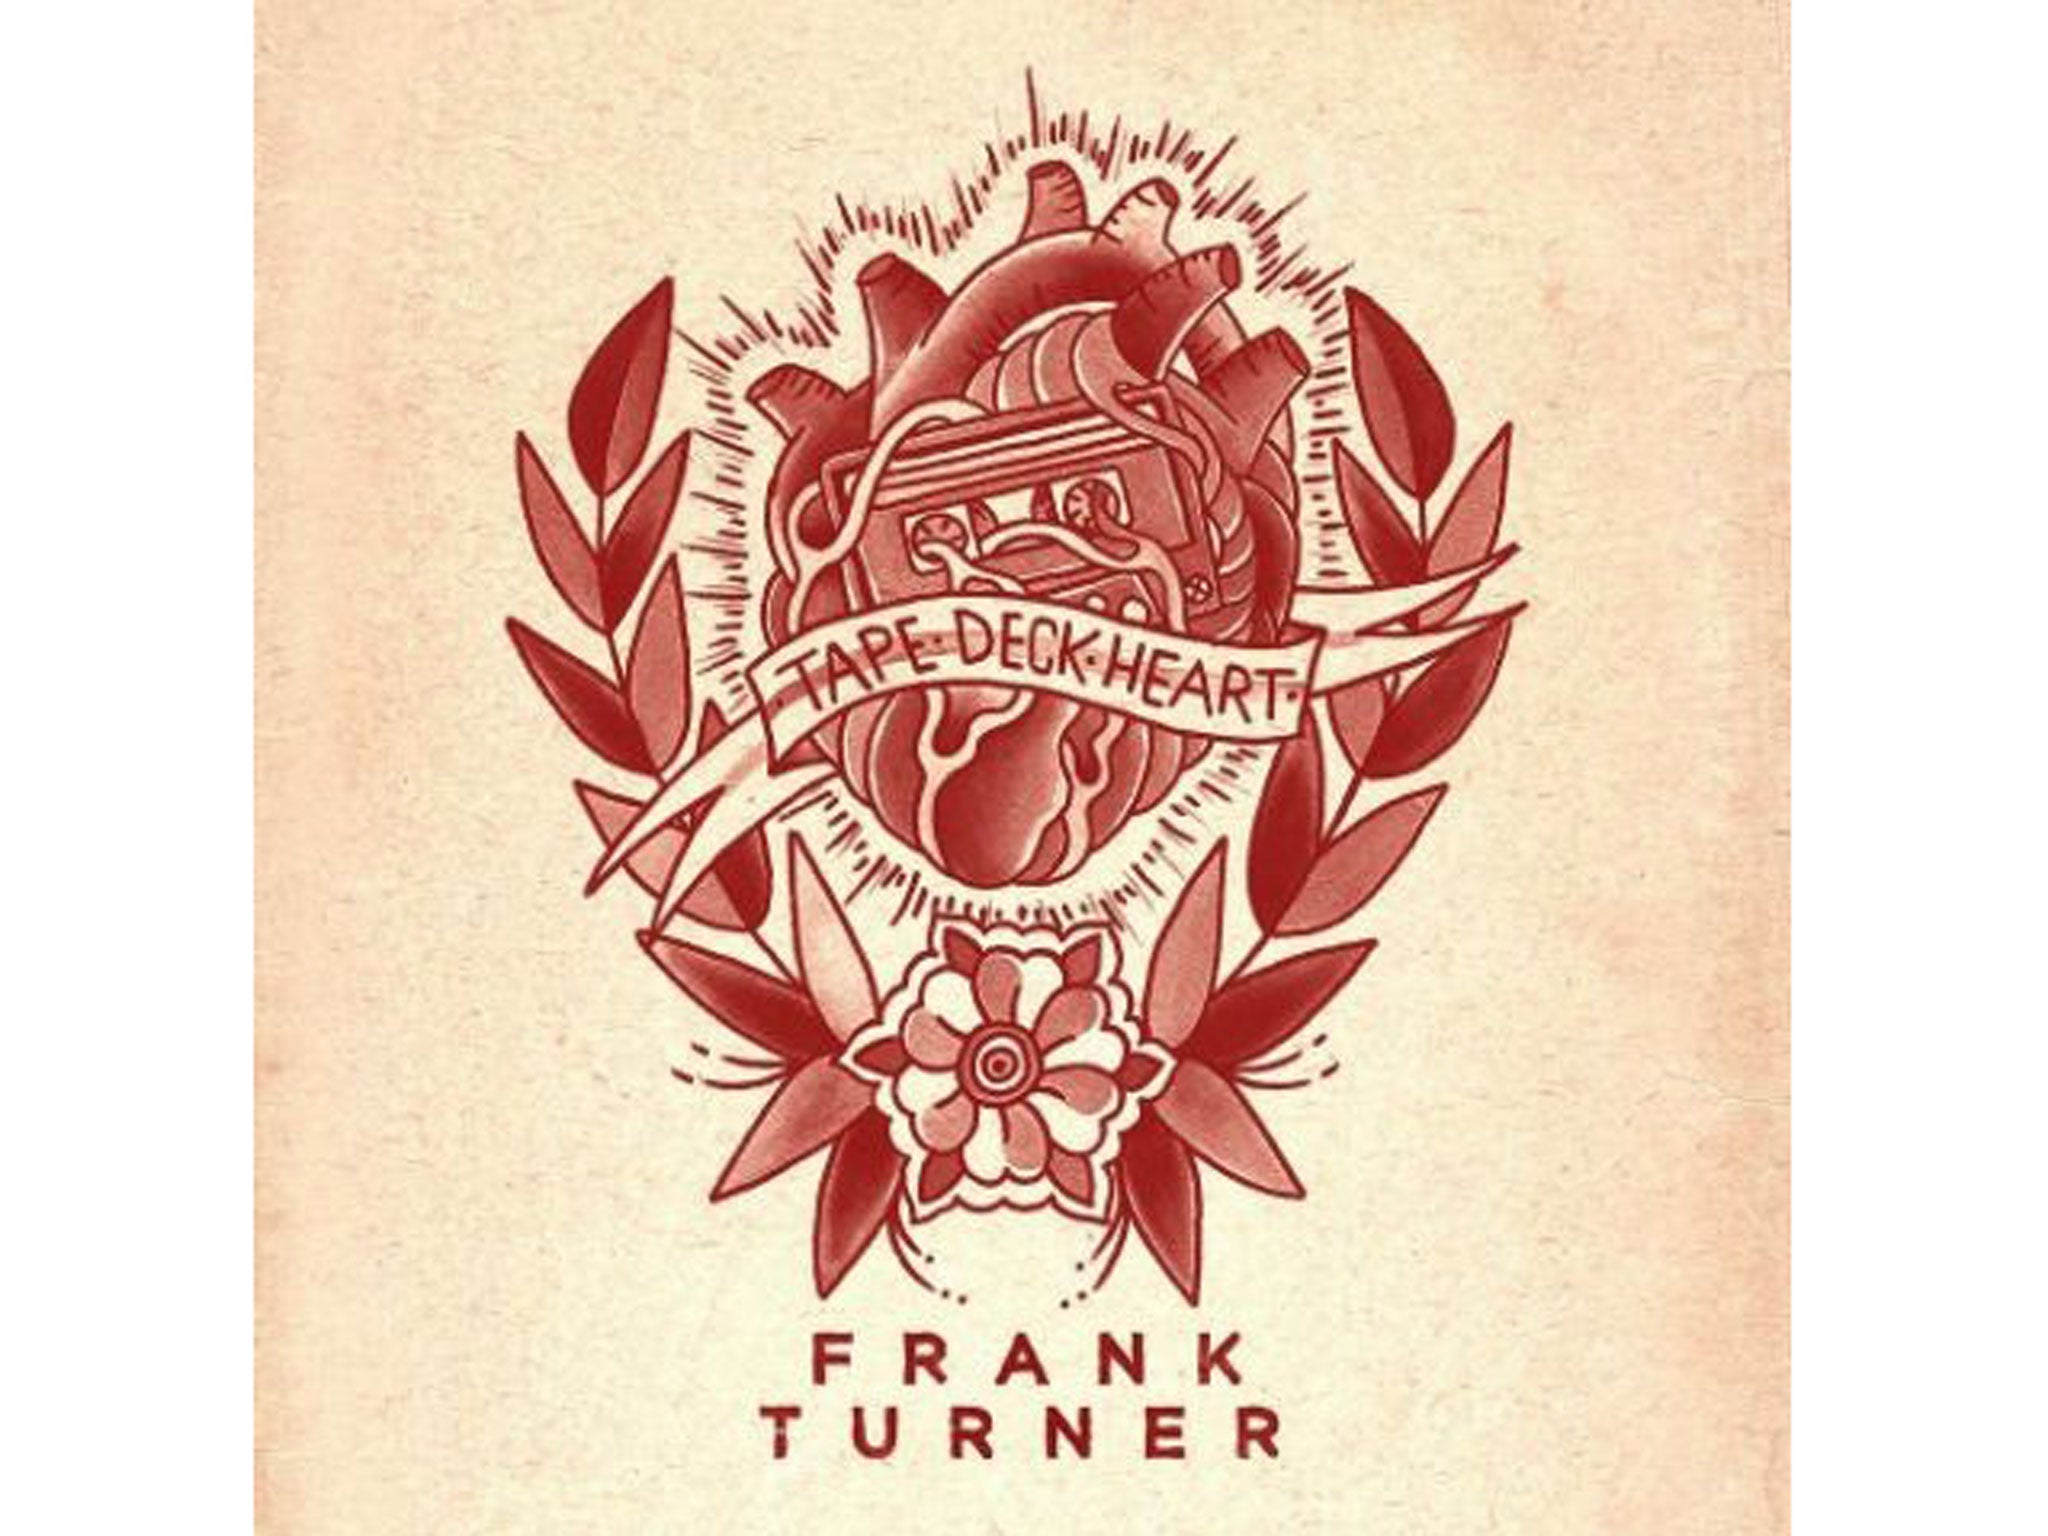 Frank Turner, Tape Deck Heart (Polydor)